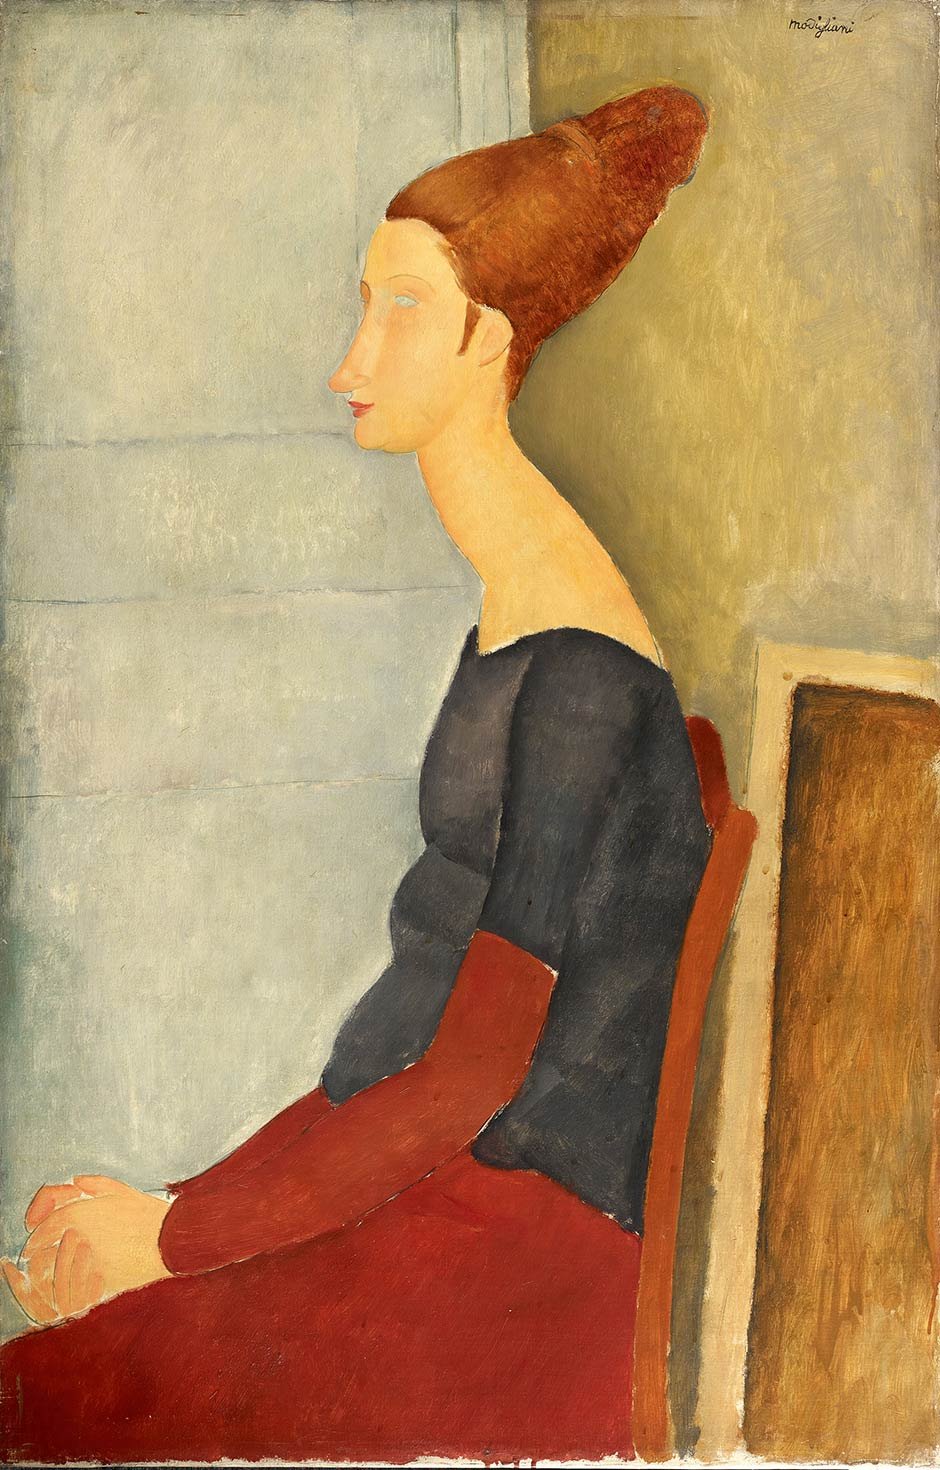 Albertina Amedeo Modigliani malte oft seine Verlobte Jeanne Hébuterne, wie hier 1918 in Öl auf Leinwand albertina.at